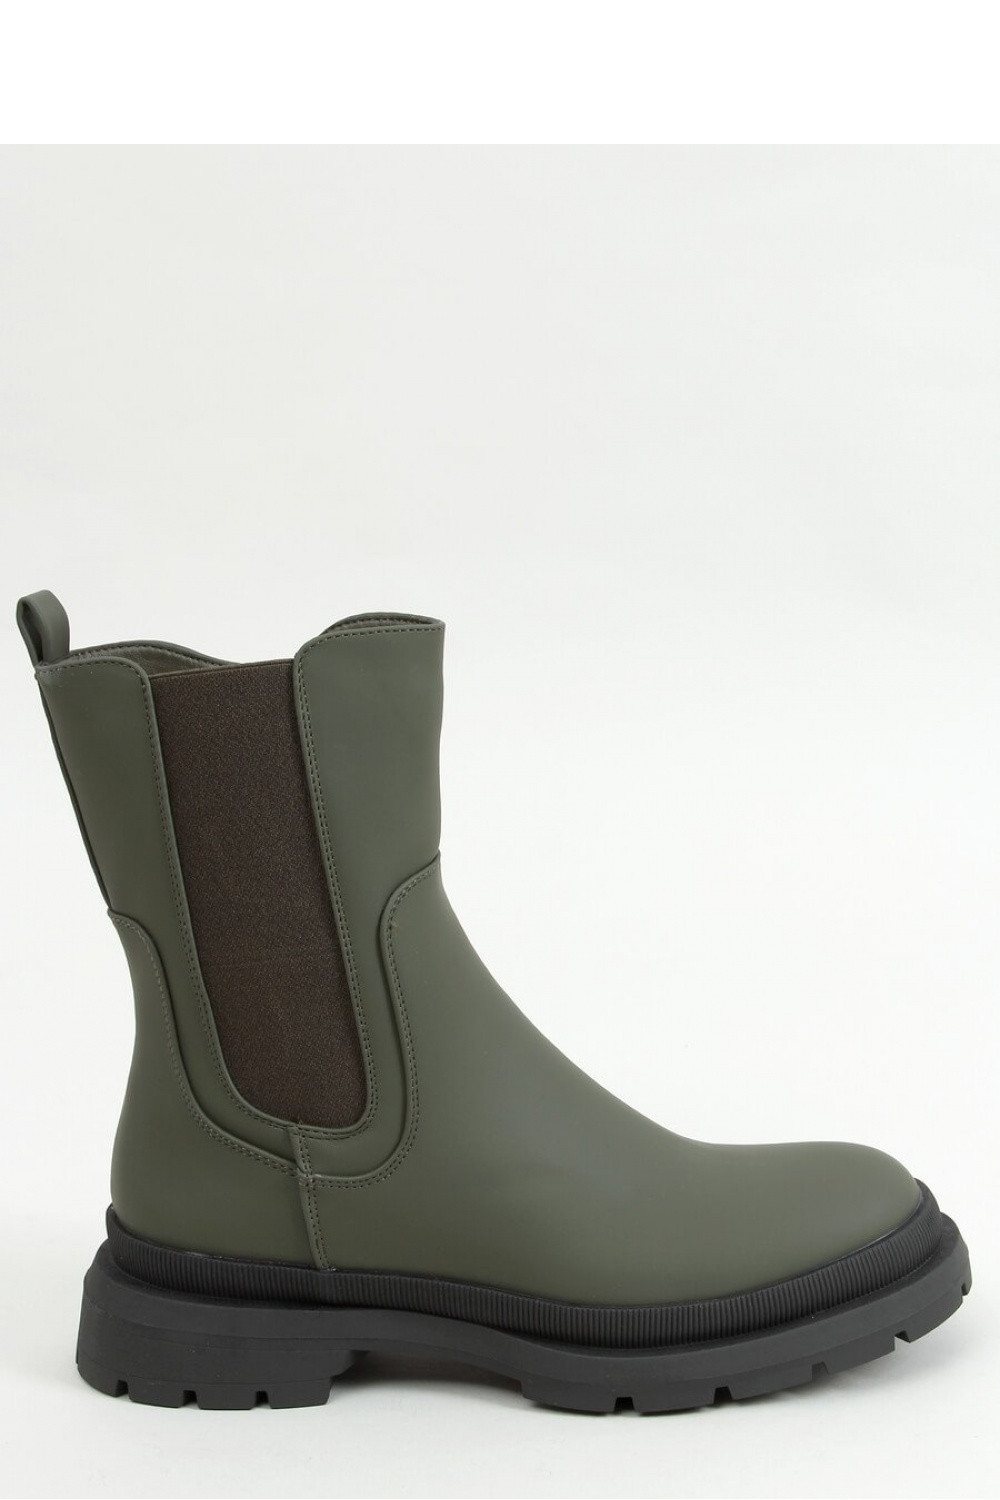 Dámské boty model 15911064 - Inello Velikost: 40, Barvy: tmavě zelená